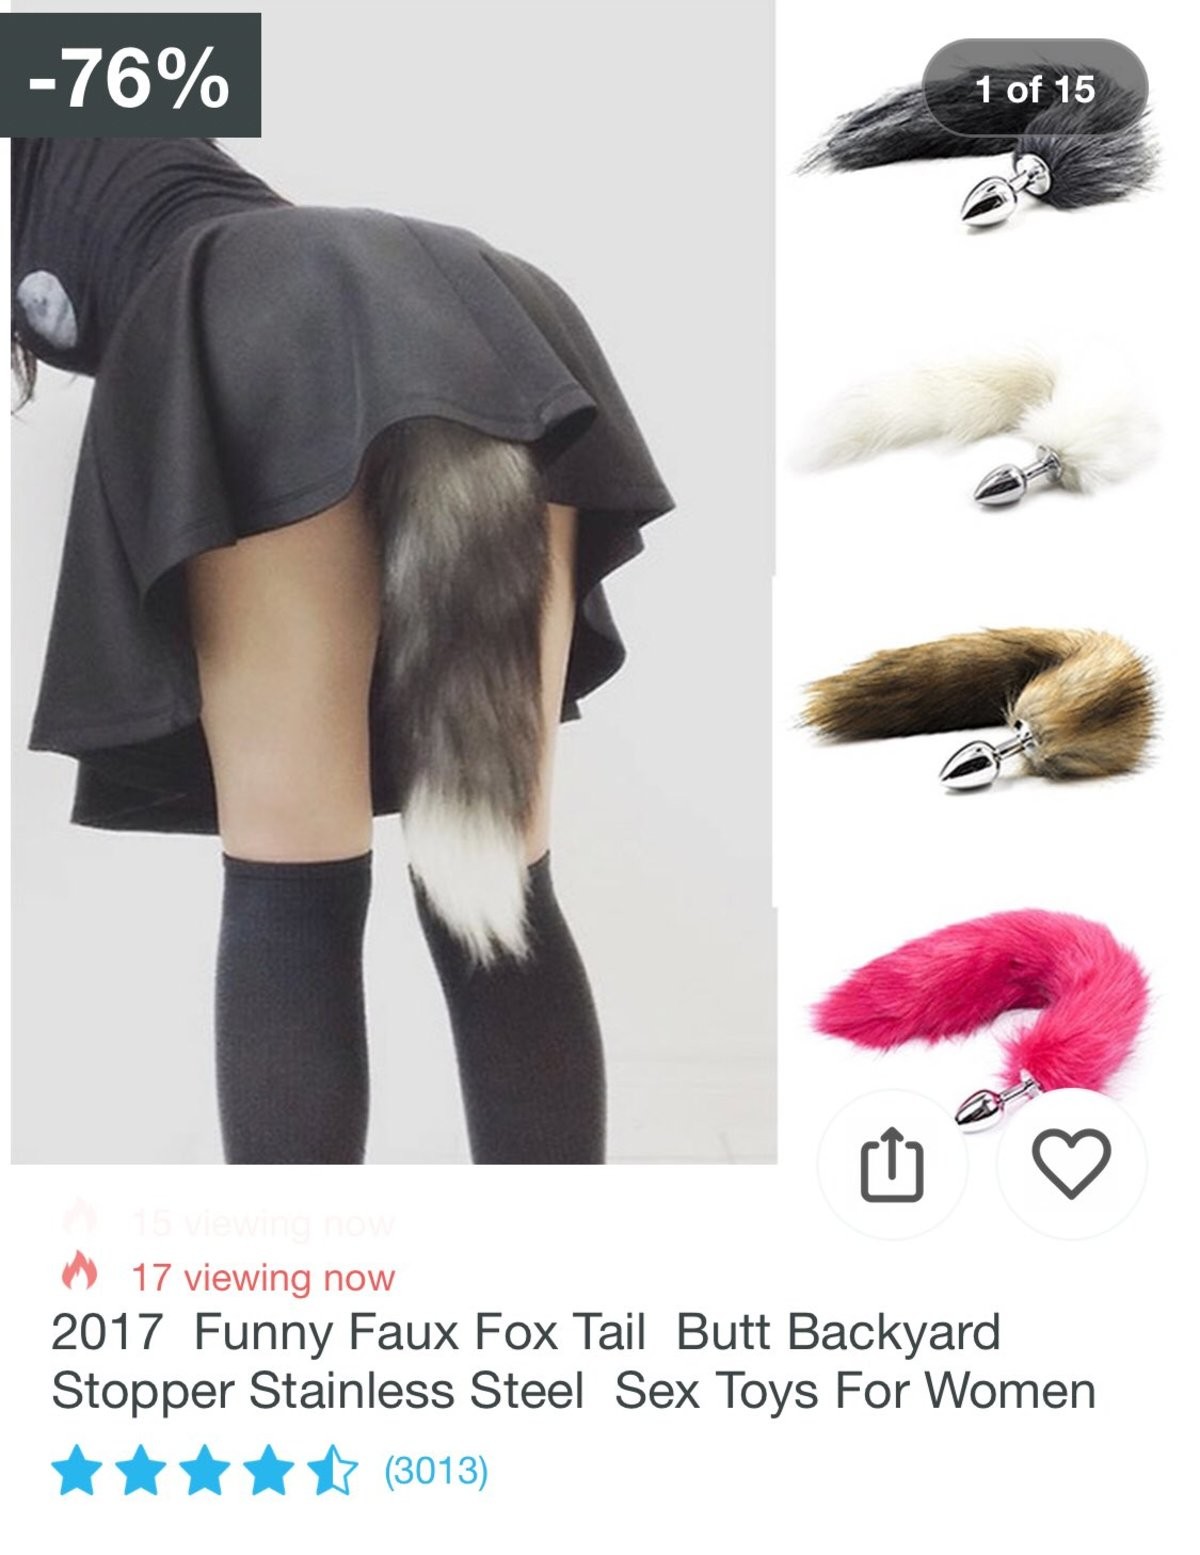 Avatar tail butt plug